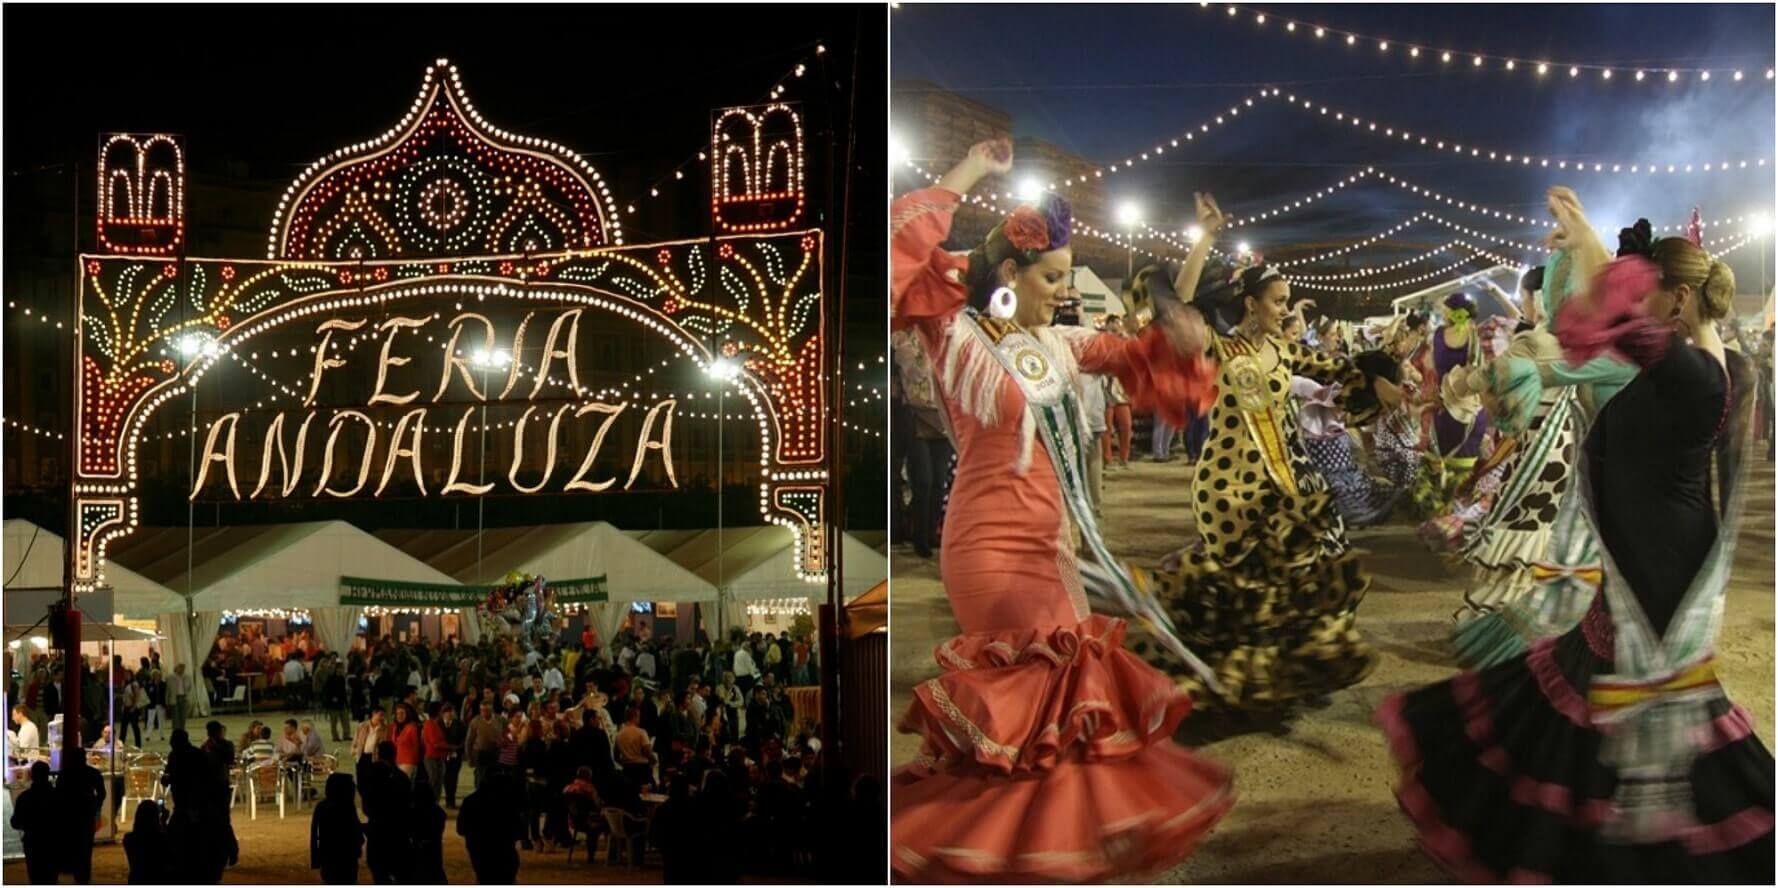 28 апреля по 6 мая в Валенсии пройдёт Большая андалузская ярмарка, где вступят лучшие коллективы фламенко, пройдут конные выставки и дегустации гастрономии